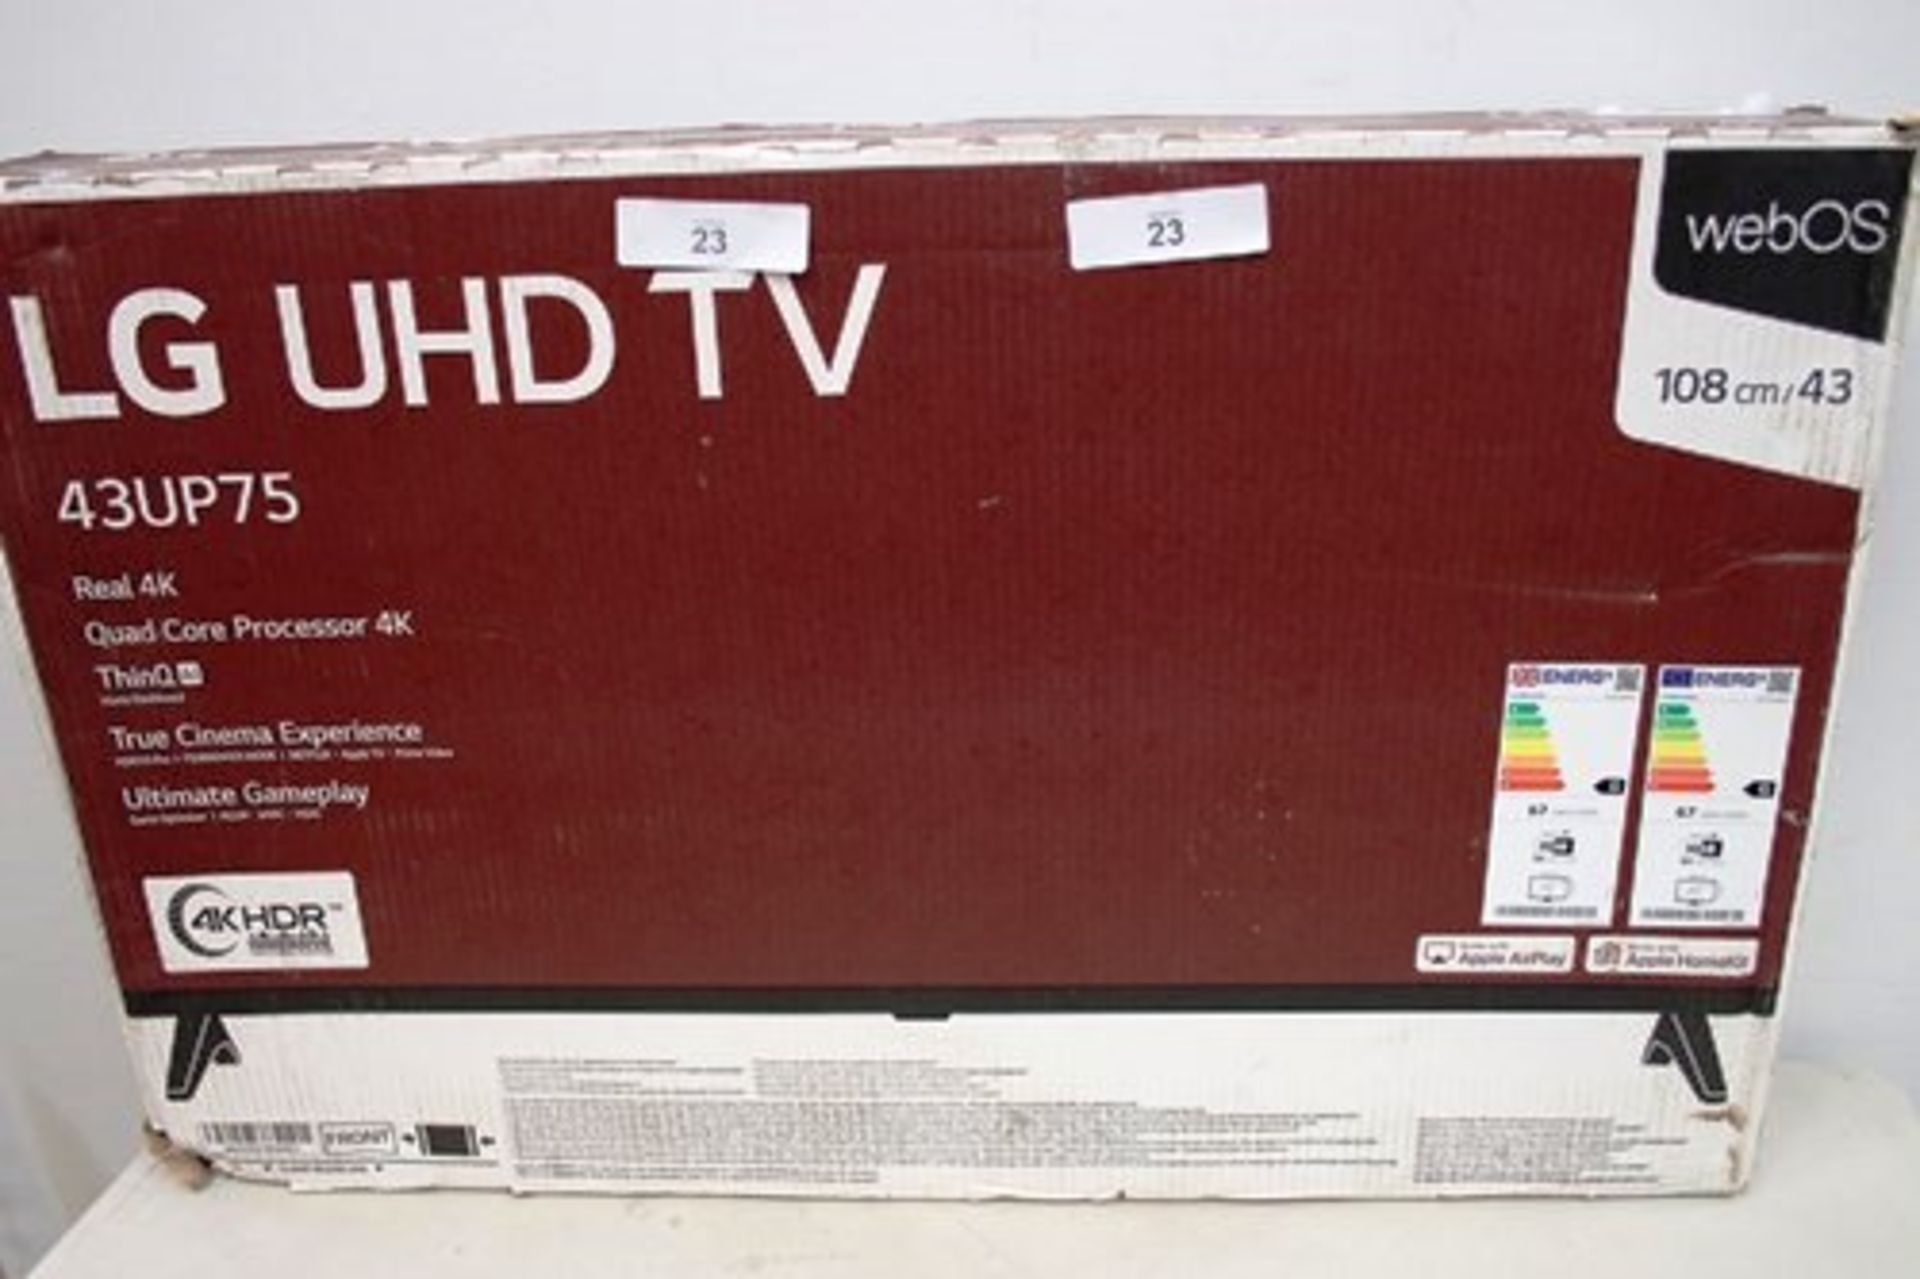 1 x LG UHD 43" TV, model 43UP75 - New (ES2)